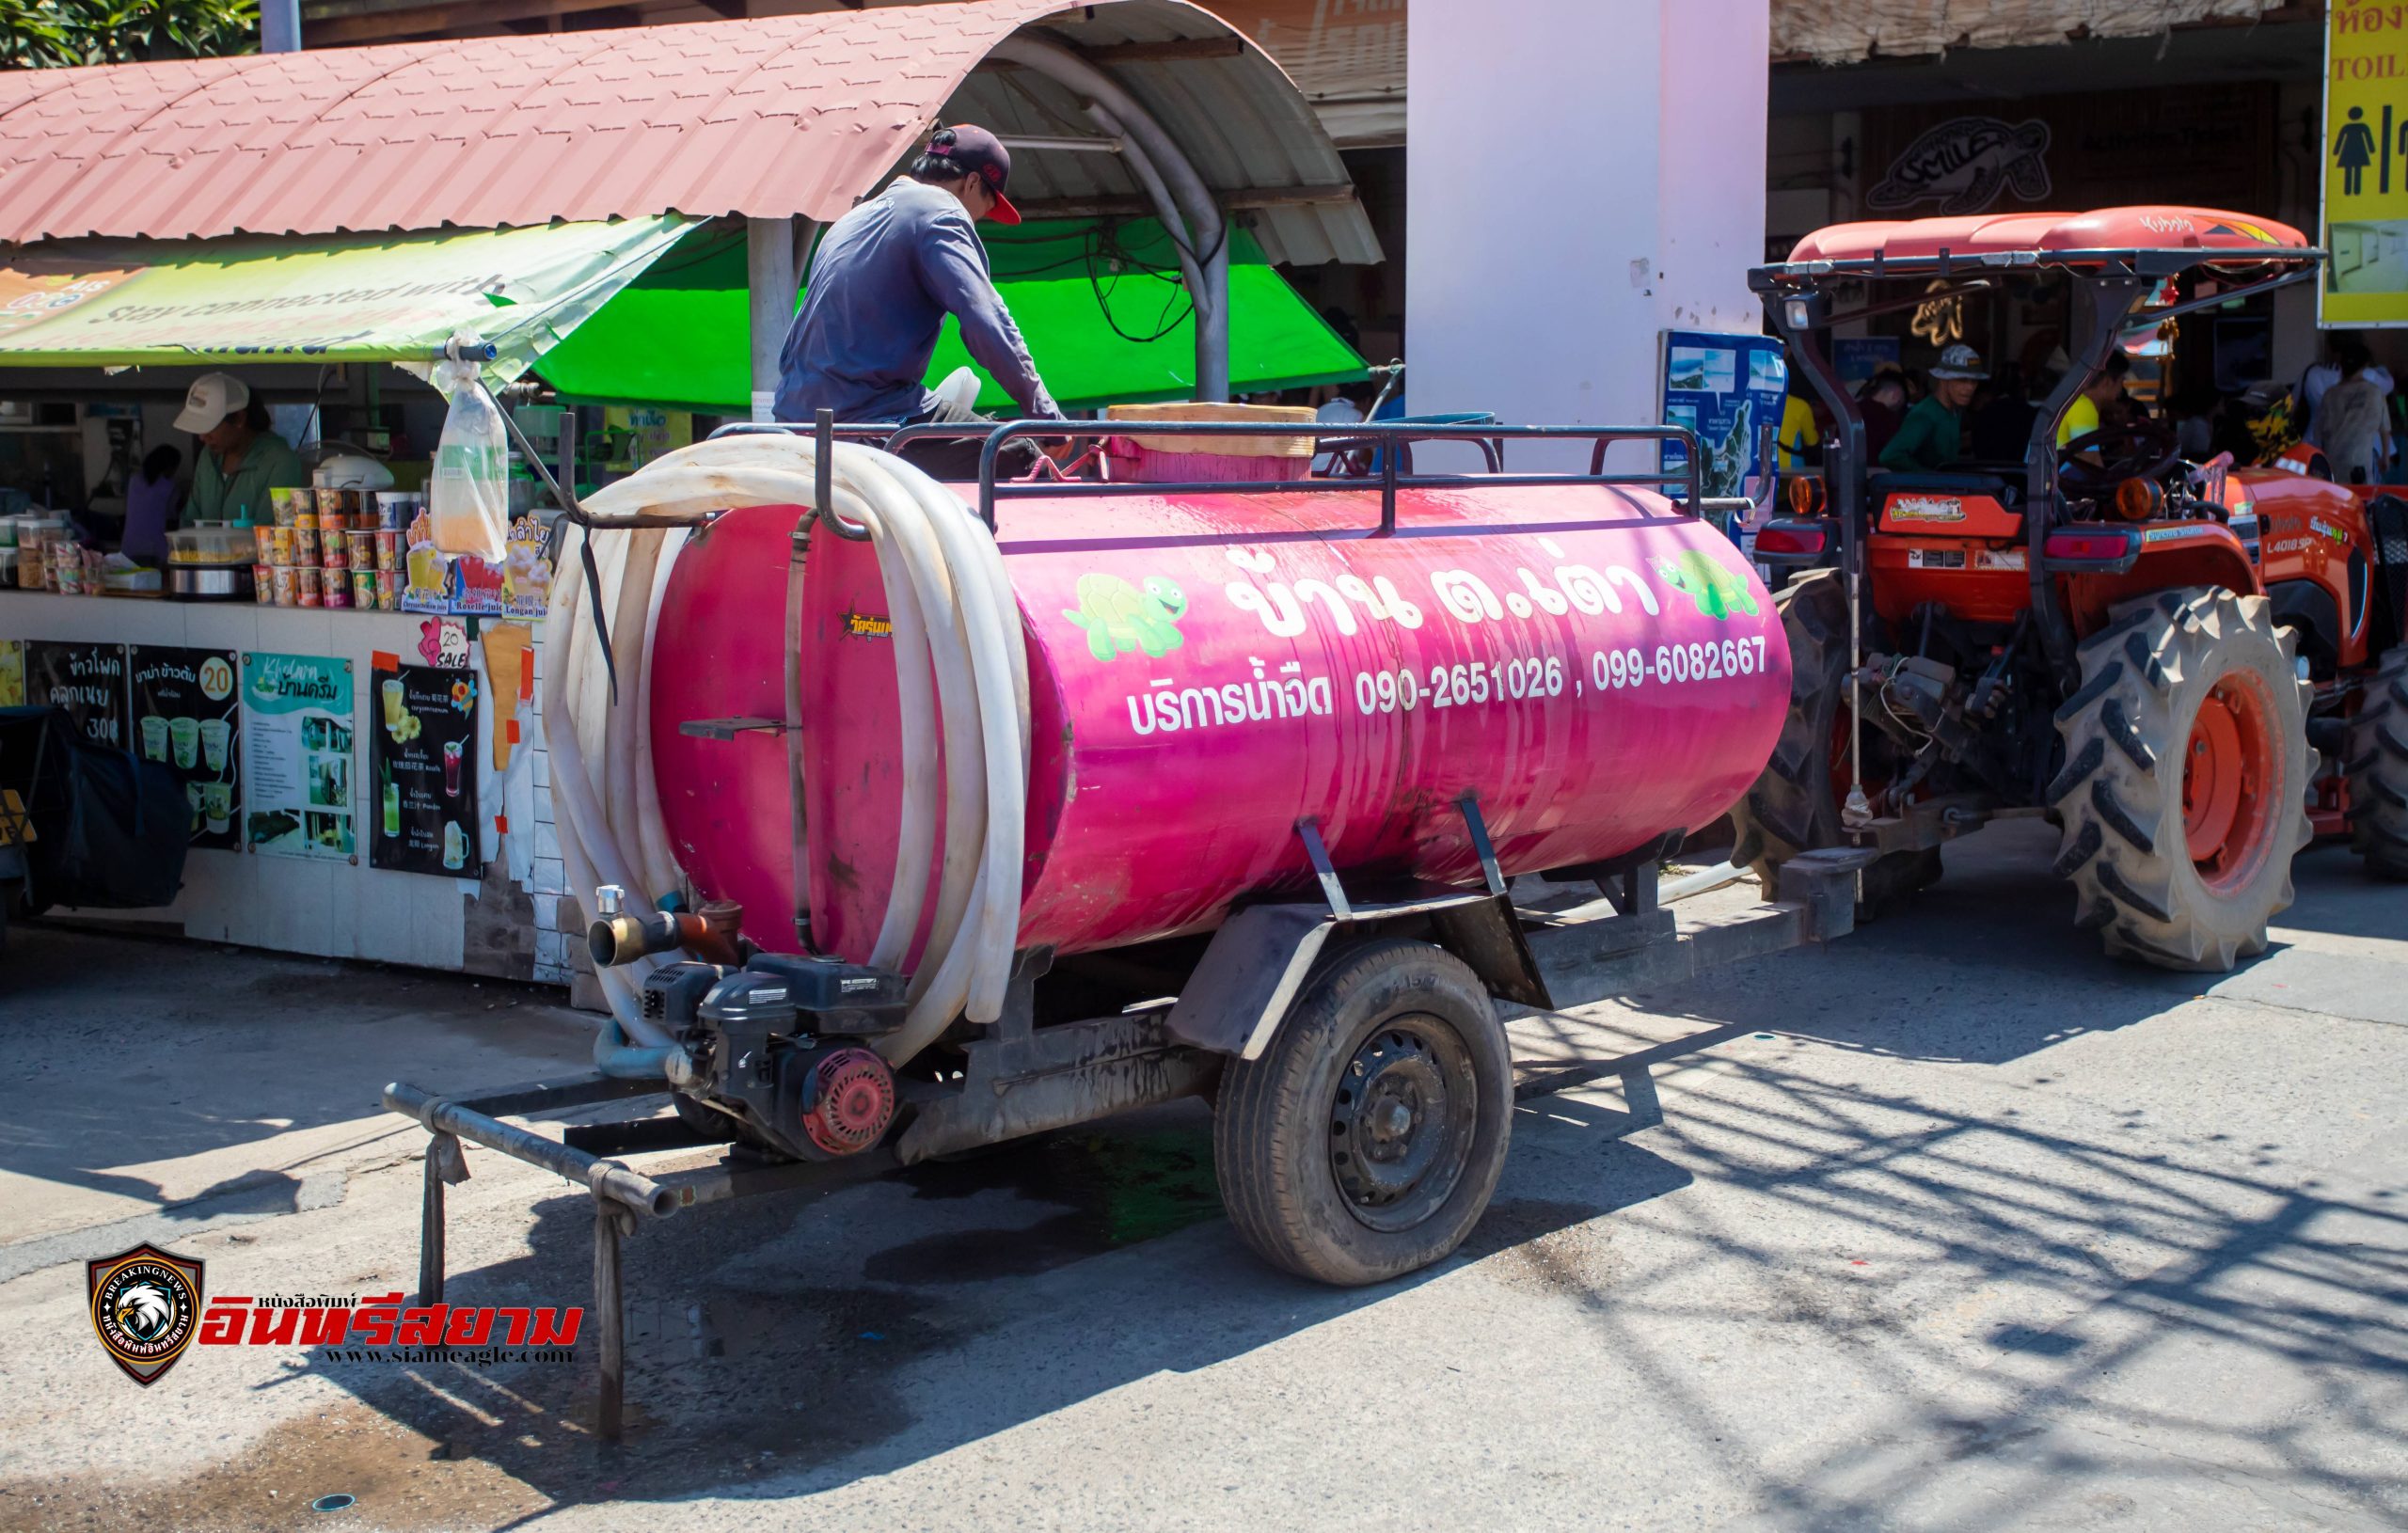 ชลบุรี-เกาะล้านแล้งจัด..!!ขาดแคลนน้ำ รถน้ำขายคันละ 1 พันบาท วอนหน่วยงานเร่งแก้ปัญหา